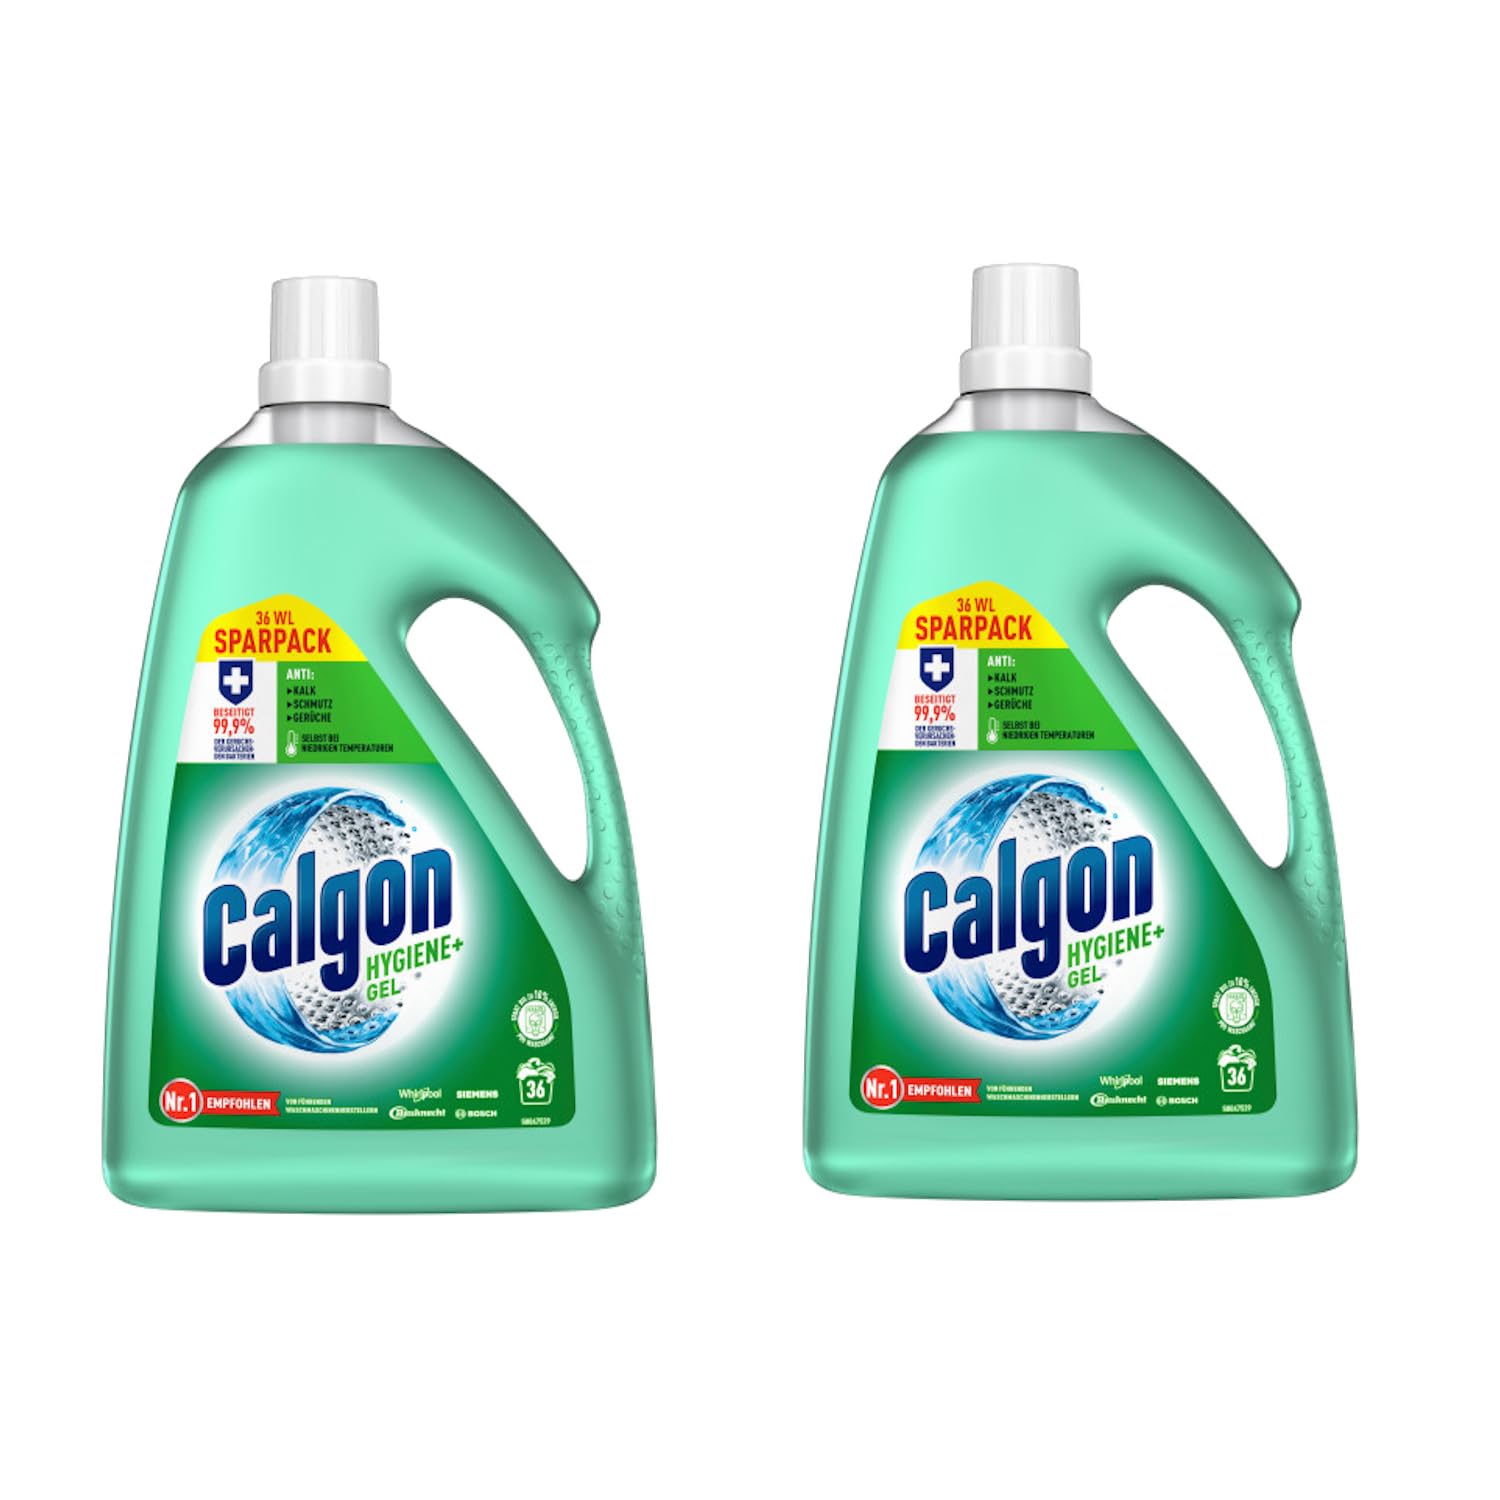 Calgon Hygiene+ Gel - Antibakterieller Wasserenthärter für die Waschmaschine - 2 x 1800 ml Hygiene Plus